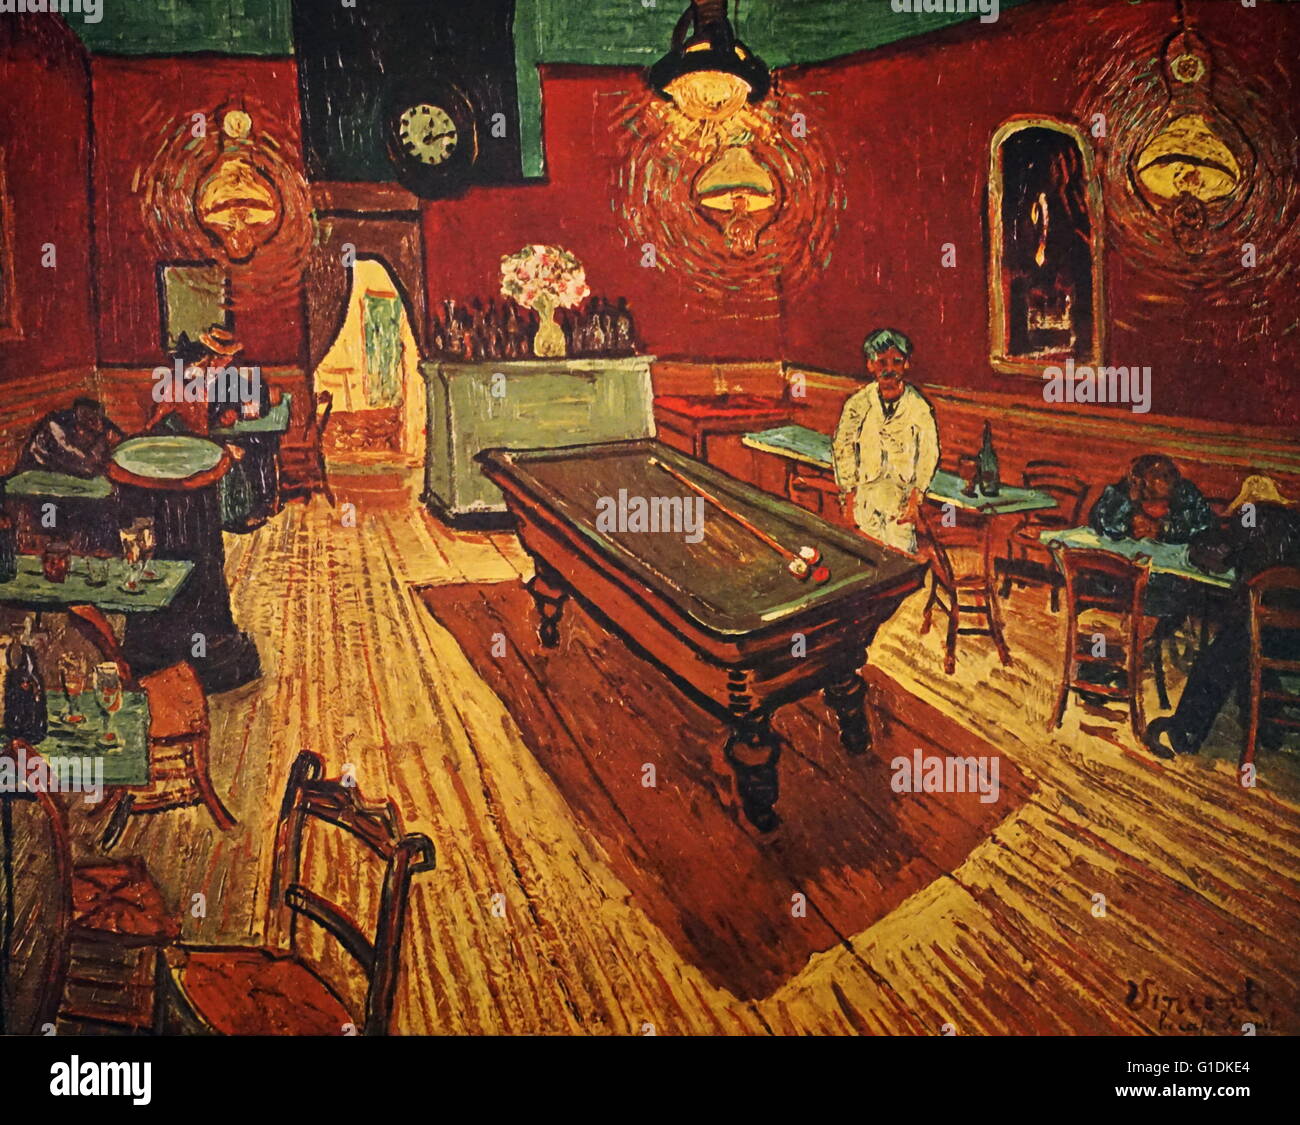 Vincent van Gogh (1853-1890) peintre post-impressionniste. Le Café de Nuit, 1888 huile sur toile Banque D'Images